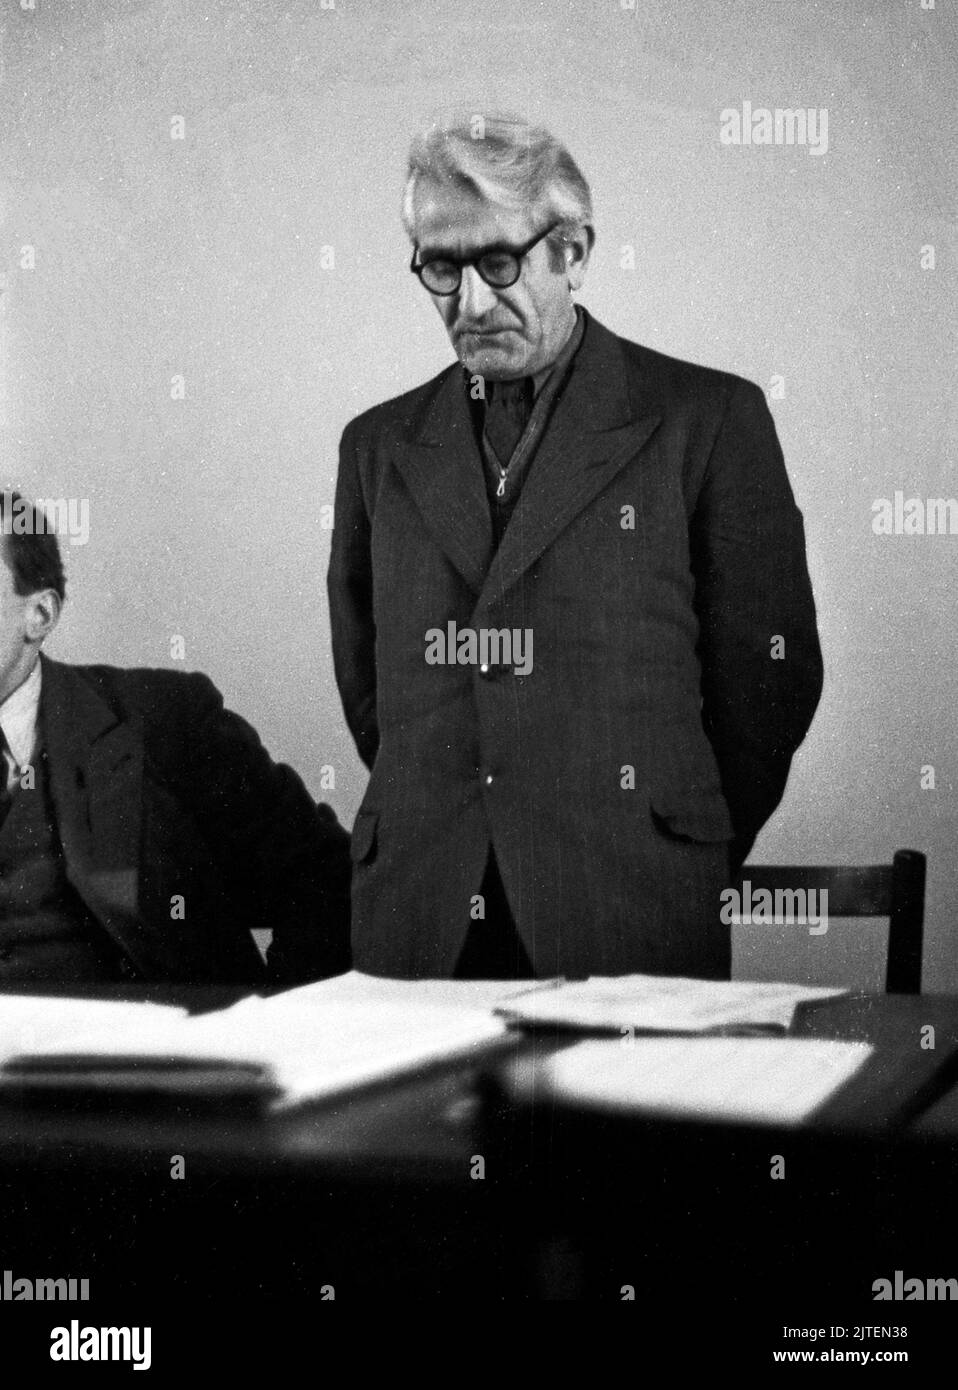 Georg Ulrich Handke, Vizepräsident der Deutschen Zentralverwaltung für Handel und Versorgung, bei einem Vortrag, Berlino, Deutschland 1947. Foto Stock